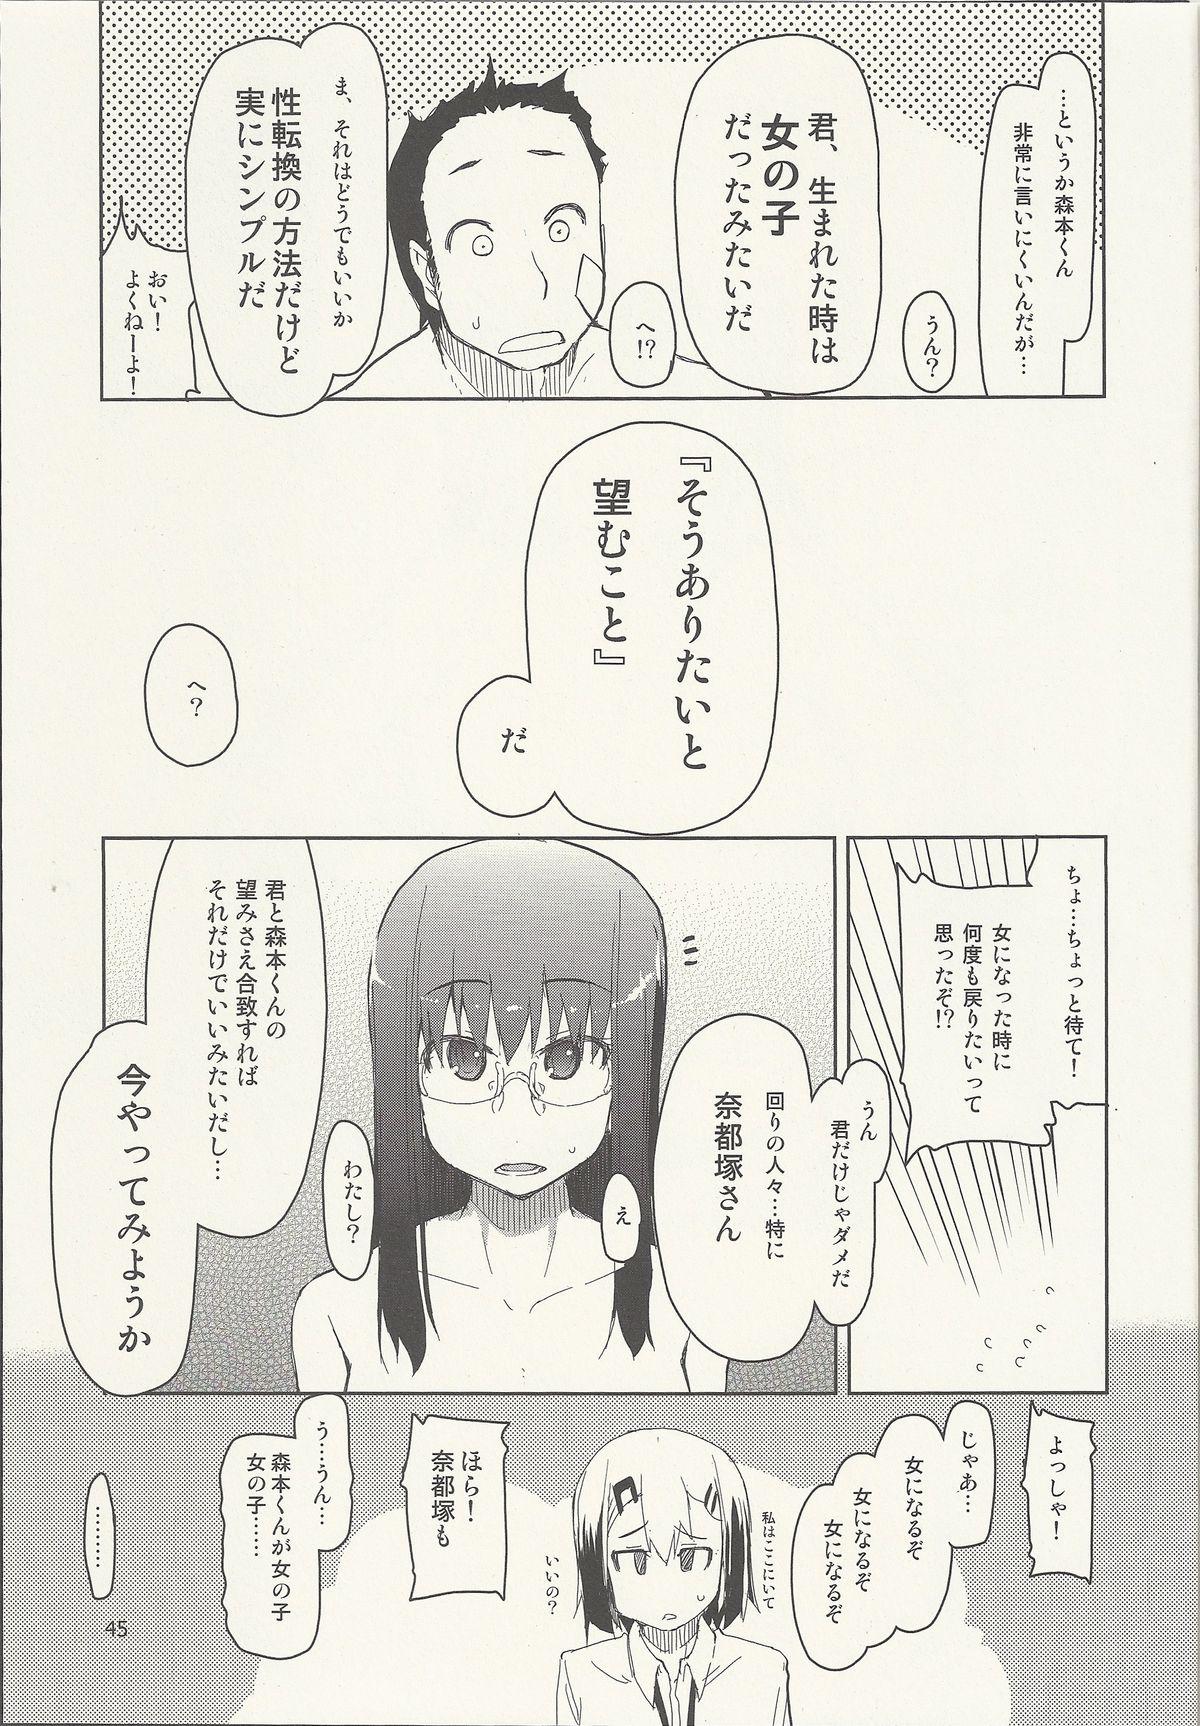 Natsuzuka-san no Himitsu. Vol. 6 Kanketsu Hen 45